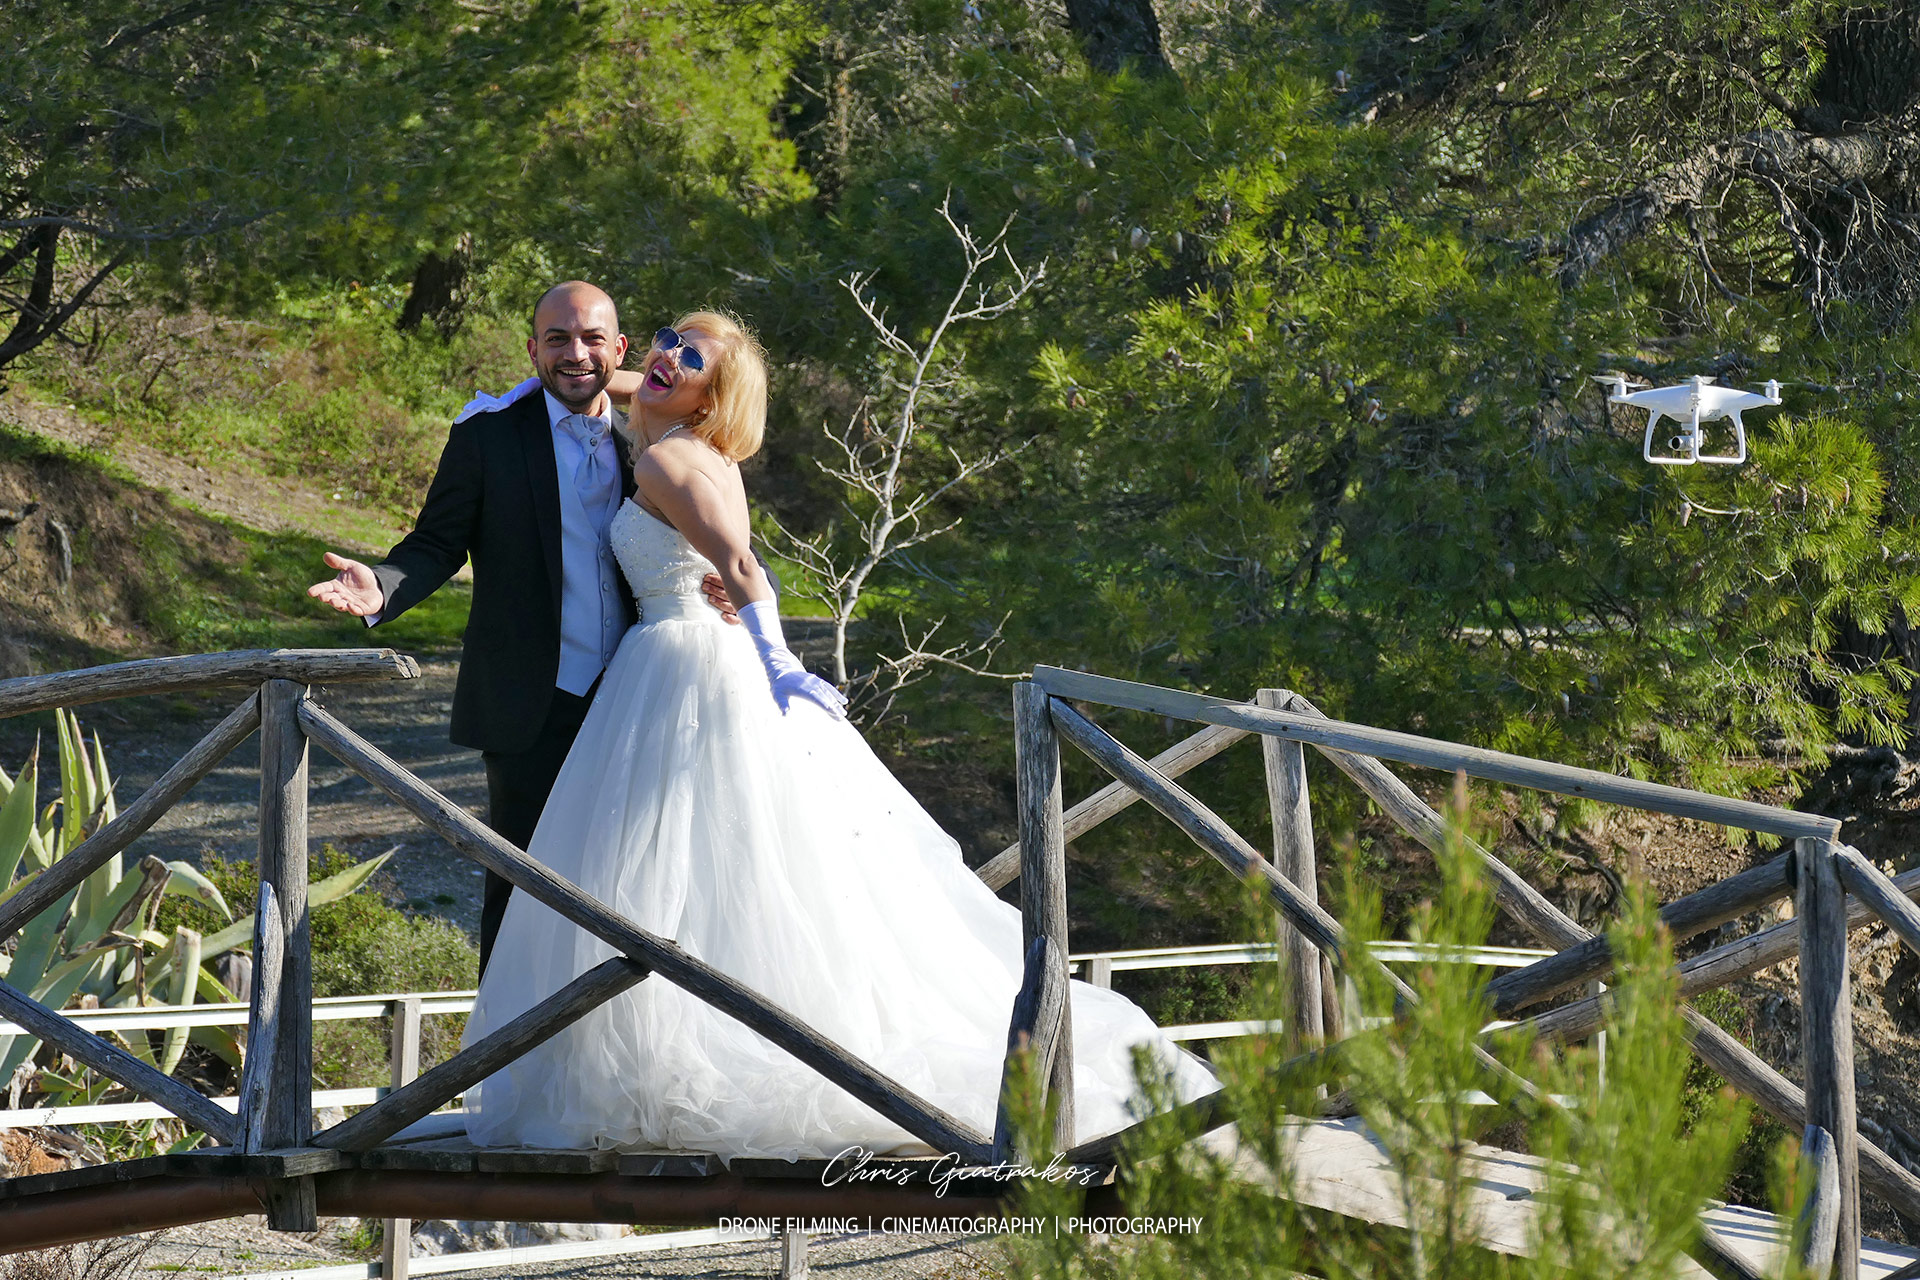 Βίντεο γάμου με drone - Drone Wedding Photography -GIATRAKOS 2